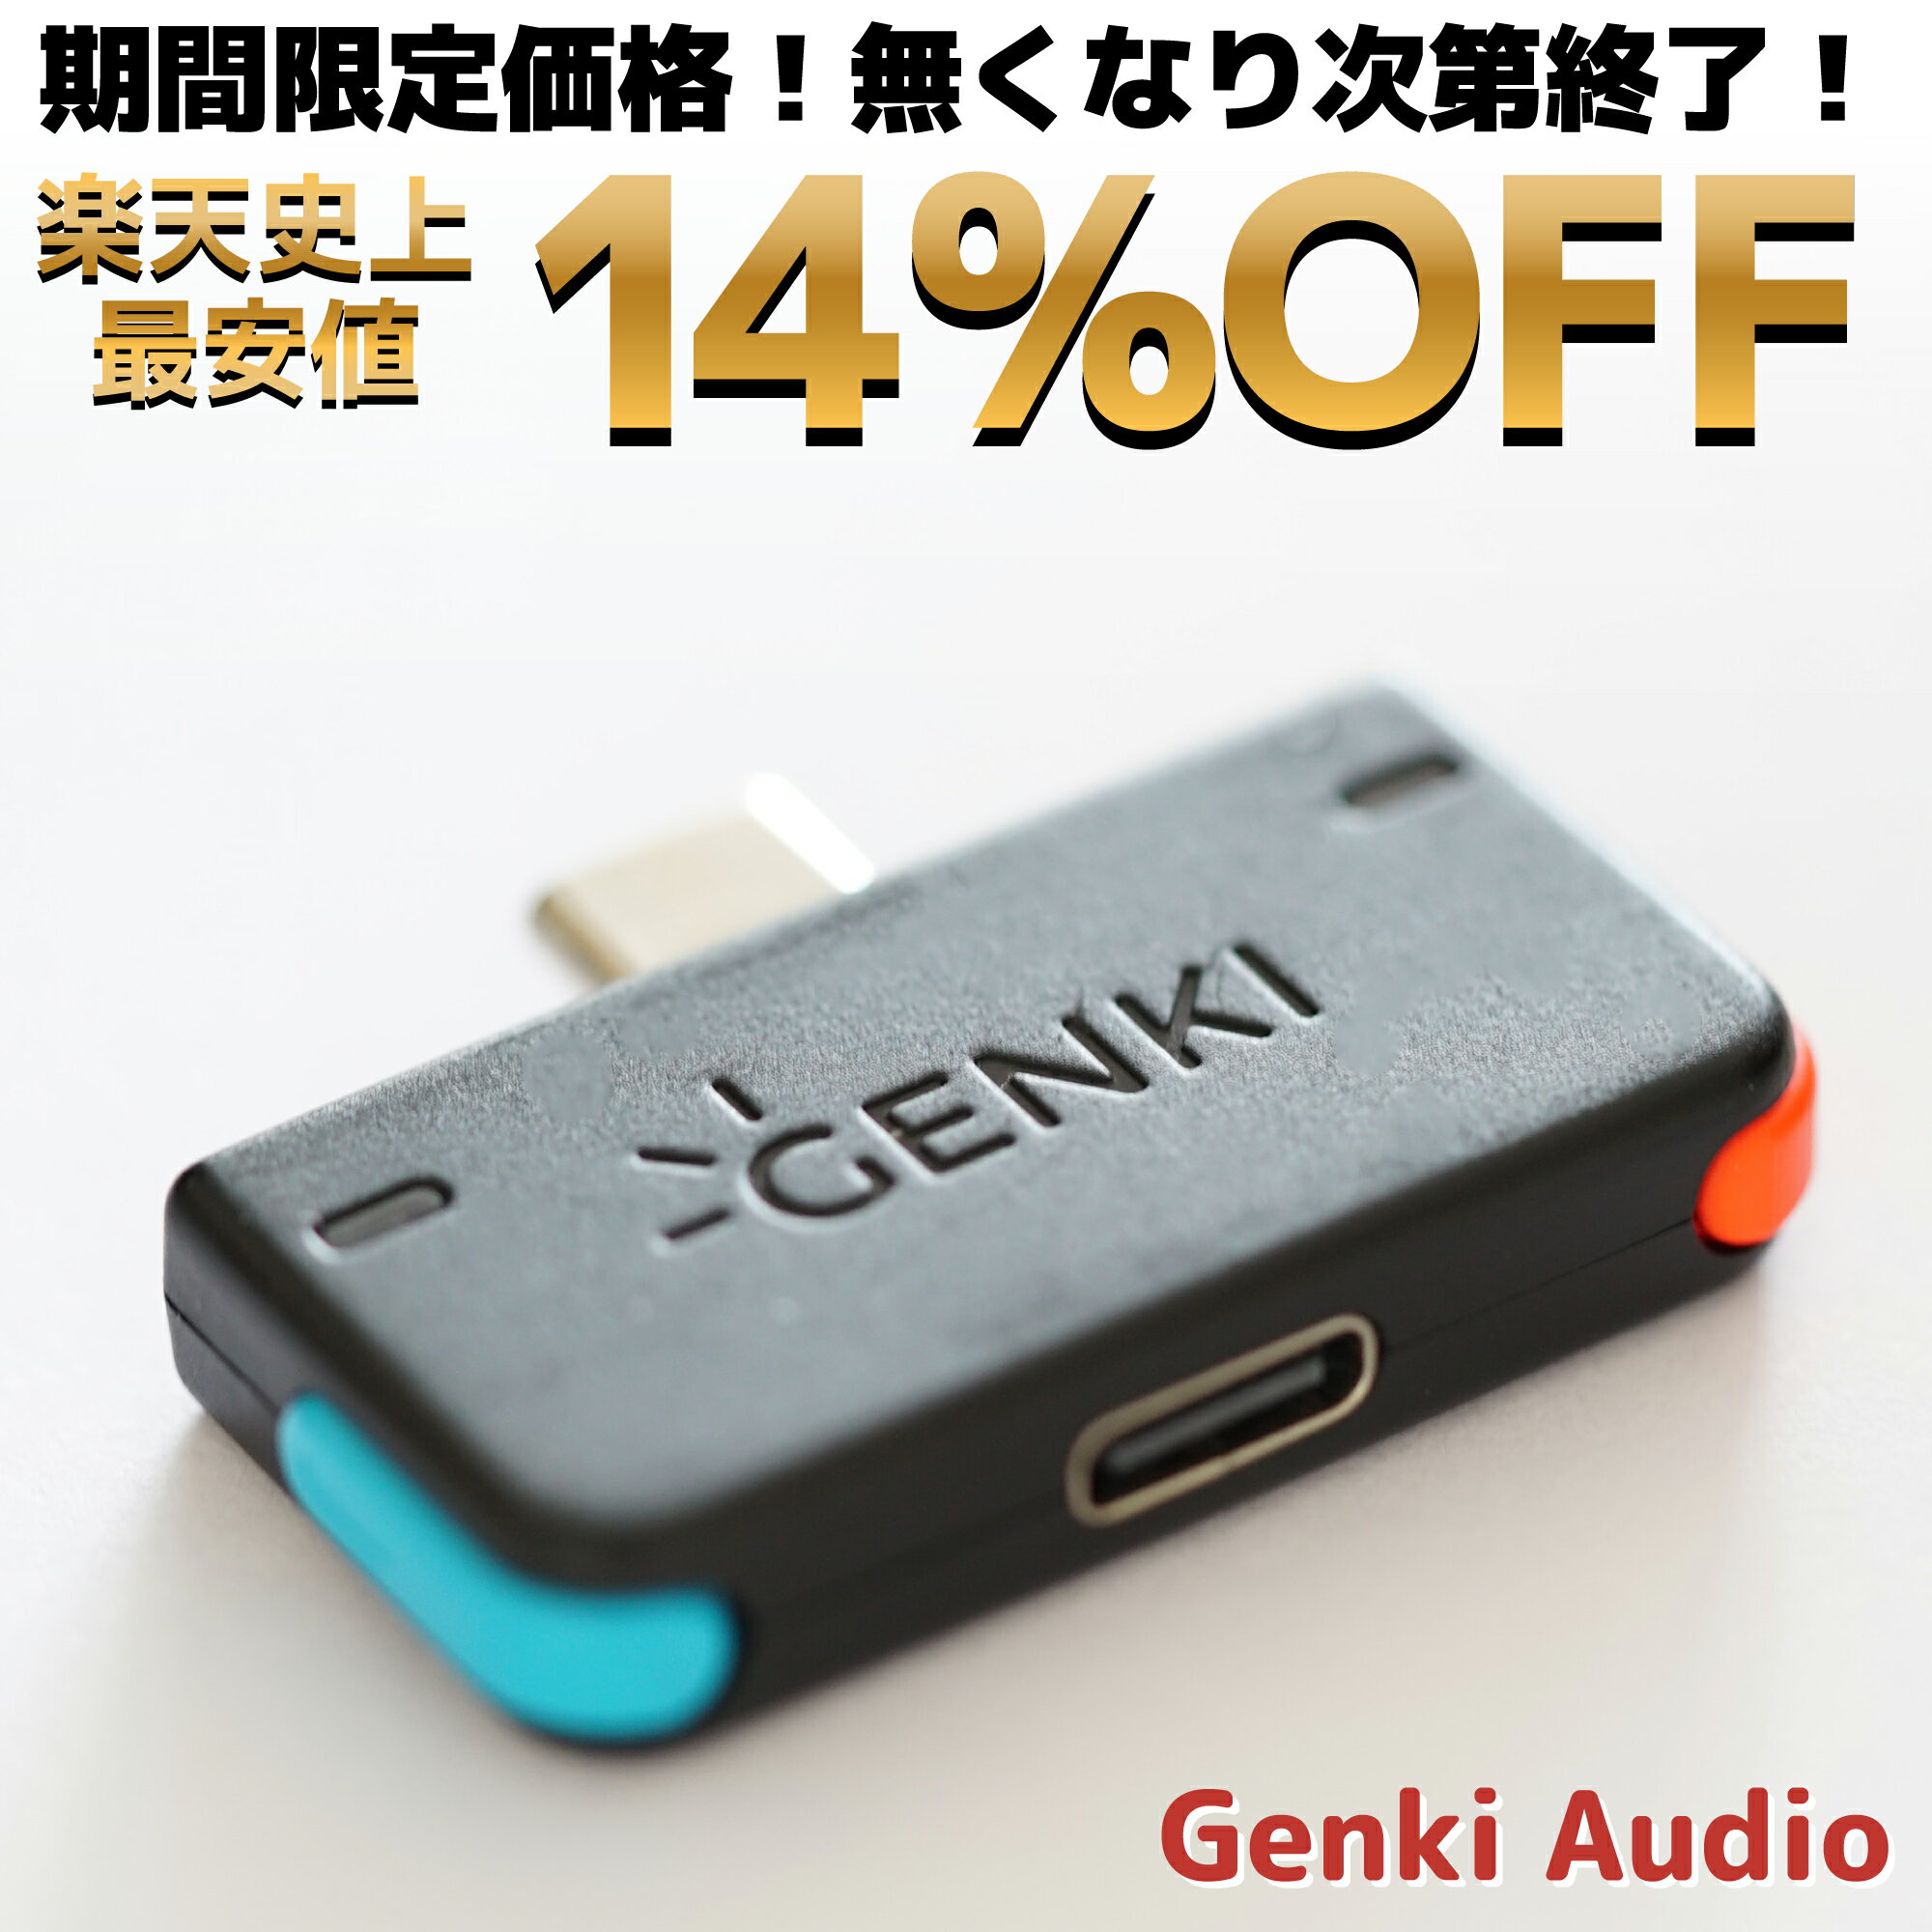 【正規販売店】 Genki Audio ゲンキオーディオ Bluetoothトランスミッター ワイヤレスイヤホン ワイヤレスヘッドホン 小型 Nintendo Switch PS4 Play Station プレイステーション